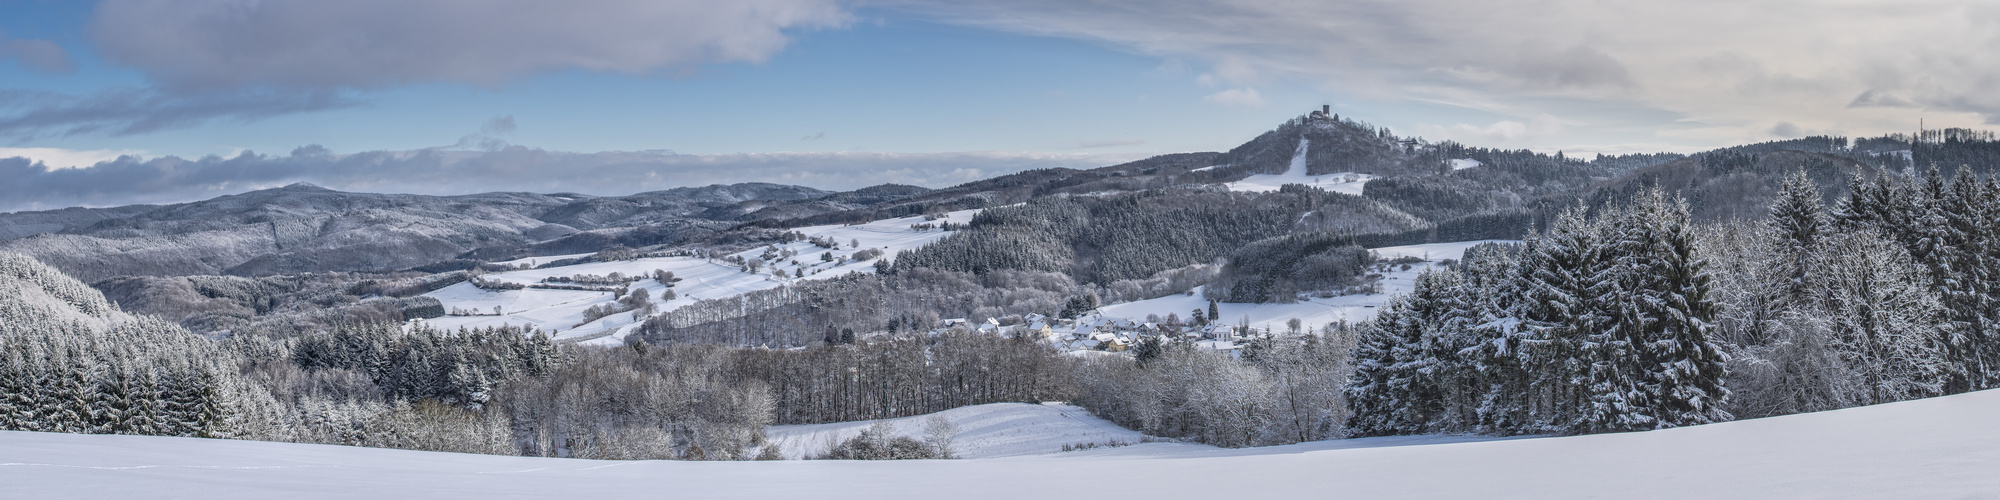 Winterliche Hocheifel mit Nürburg, Hohe Acht und Quiddelbach